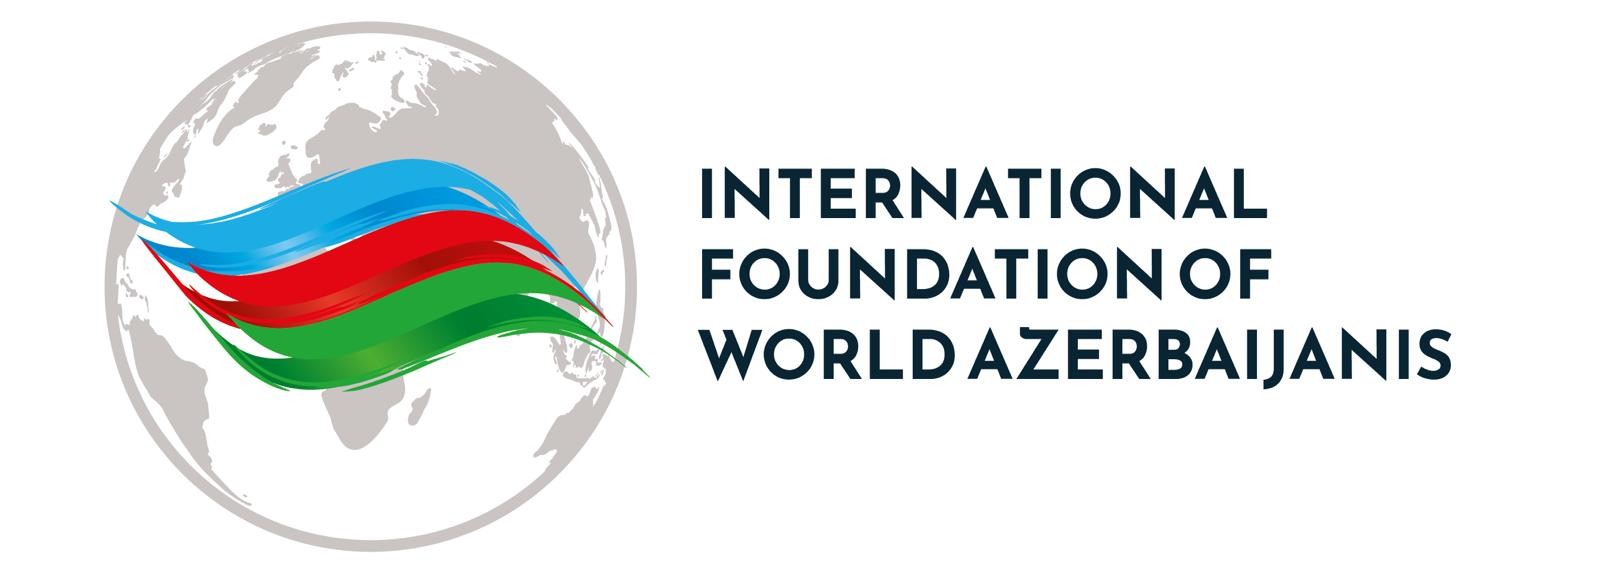 Международный фонд азербайджанцев мира осудил заявление армян Германии и Швеции